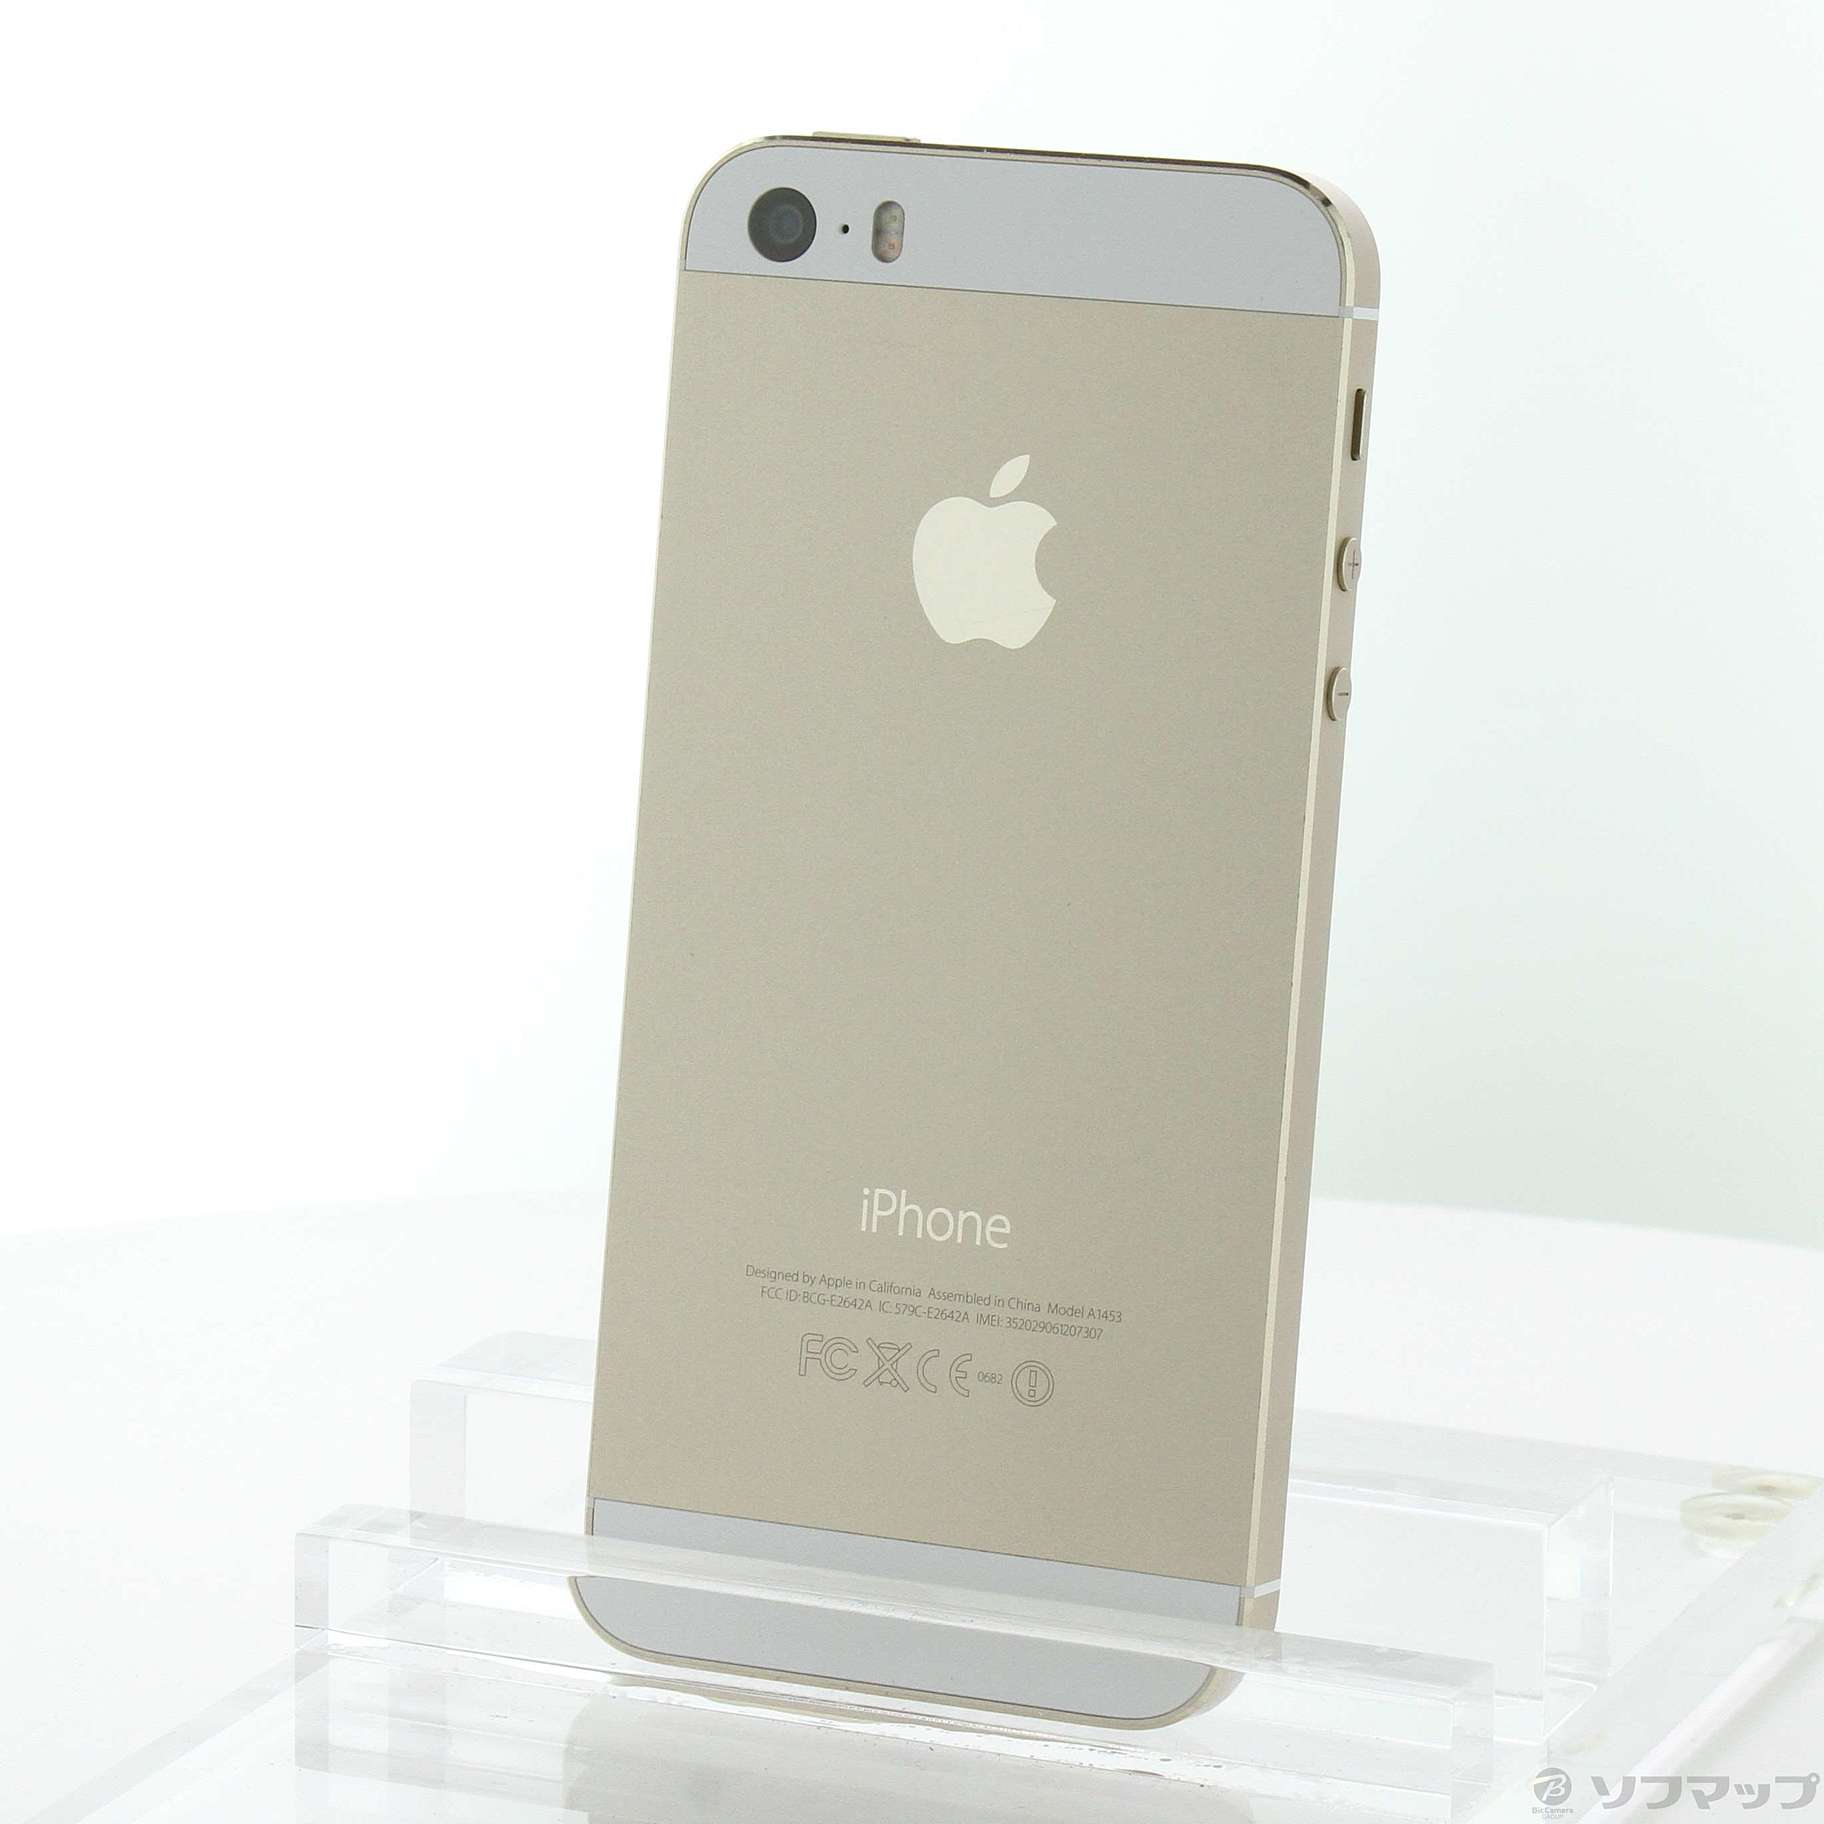 iPhone 5s Gold 32 GB au - スマートフォン本体